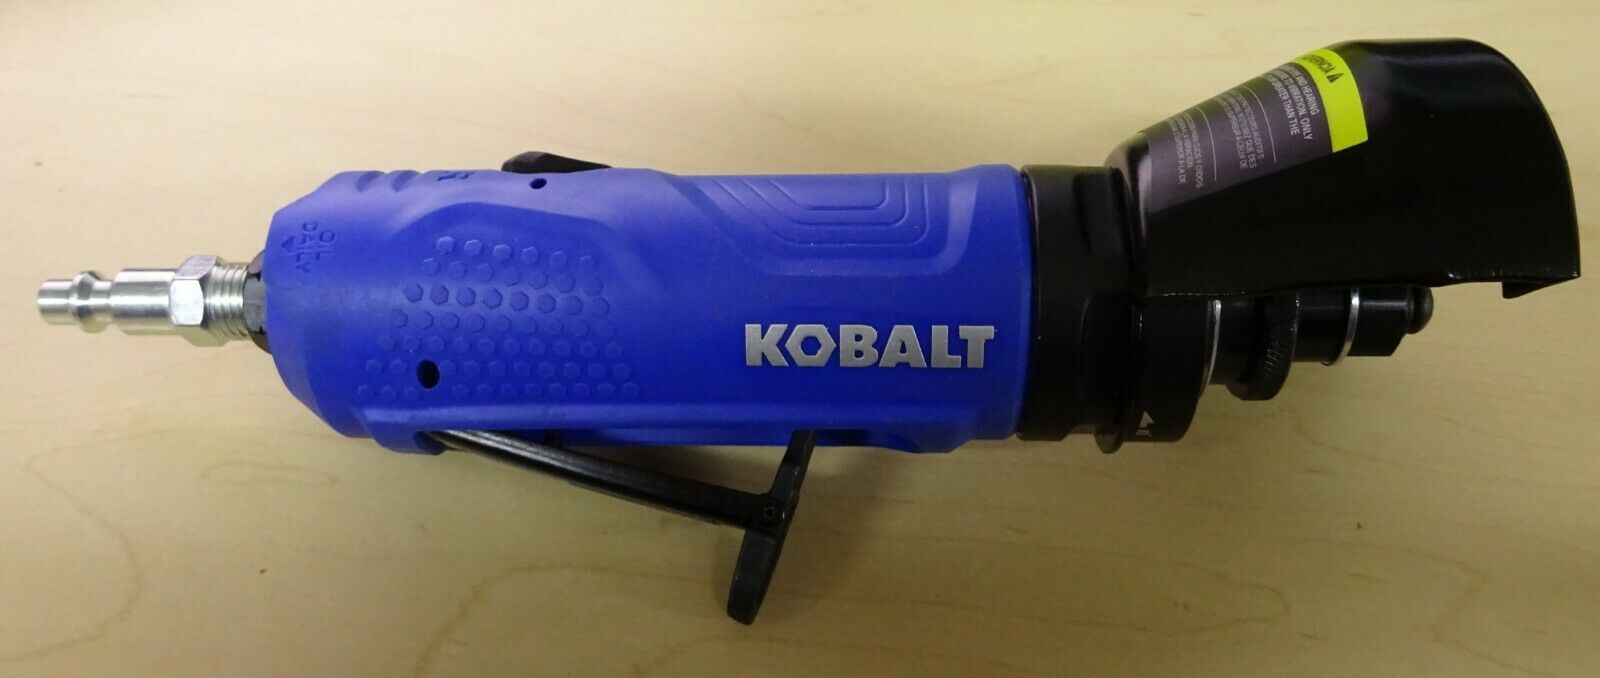 Kobalt 3